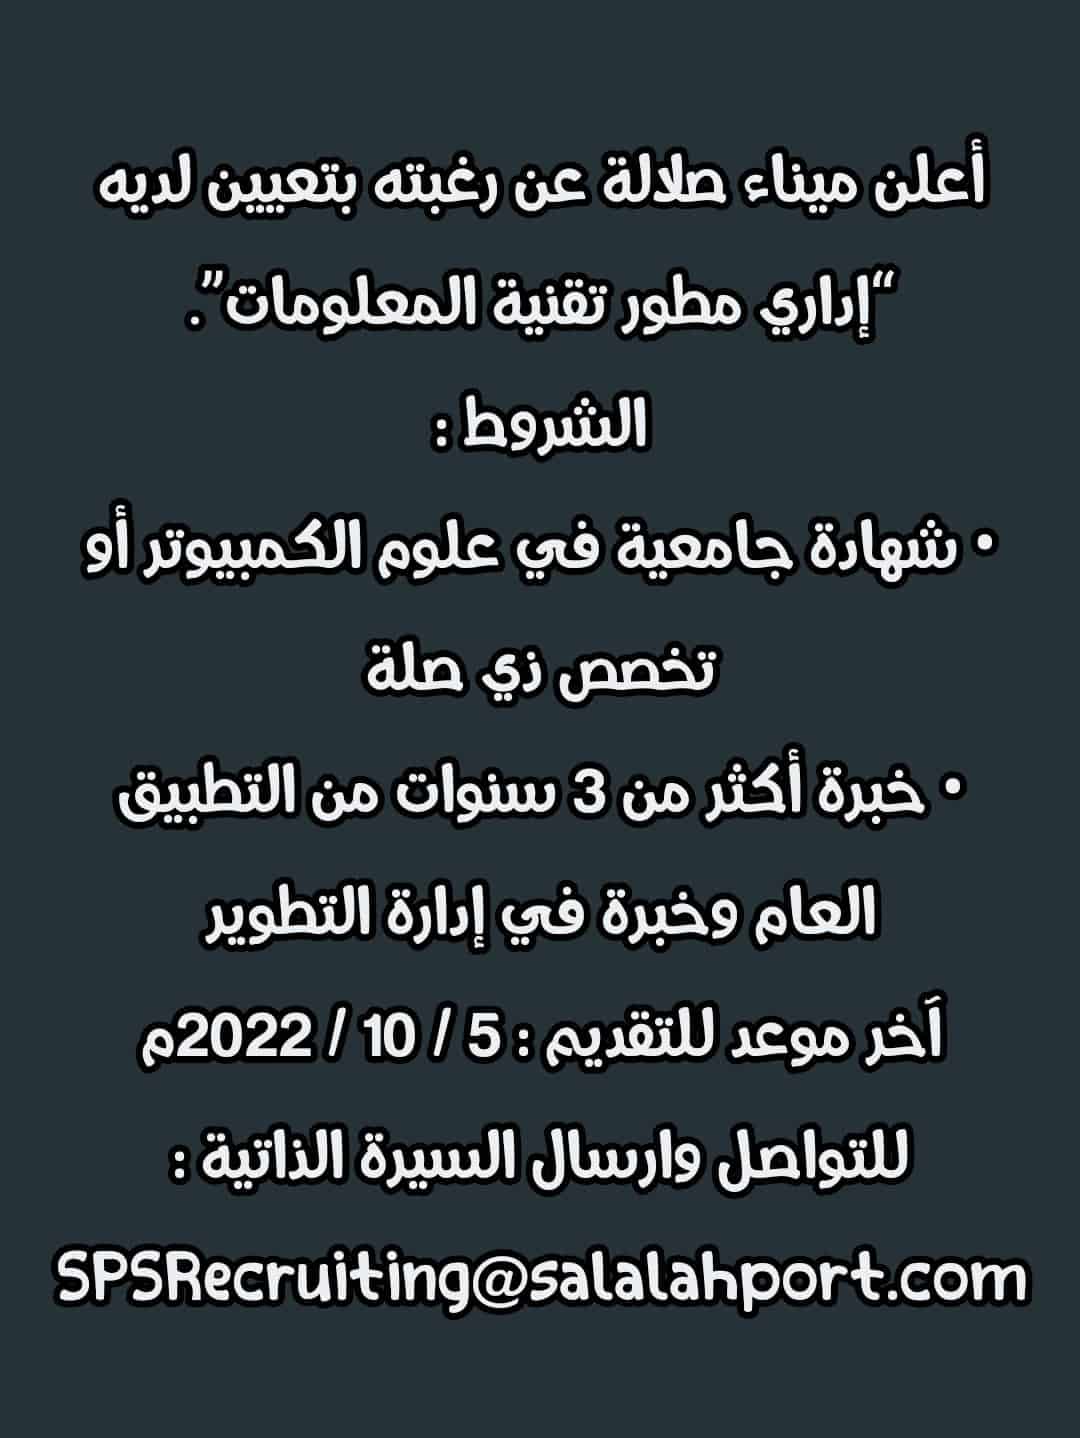 وظائف شاغرة في سلطنة عمان اليوم 2-10-2022 لجميع الجنسيات